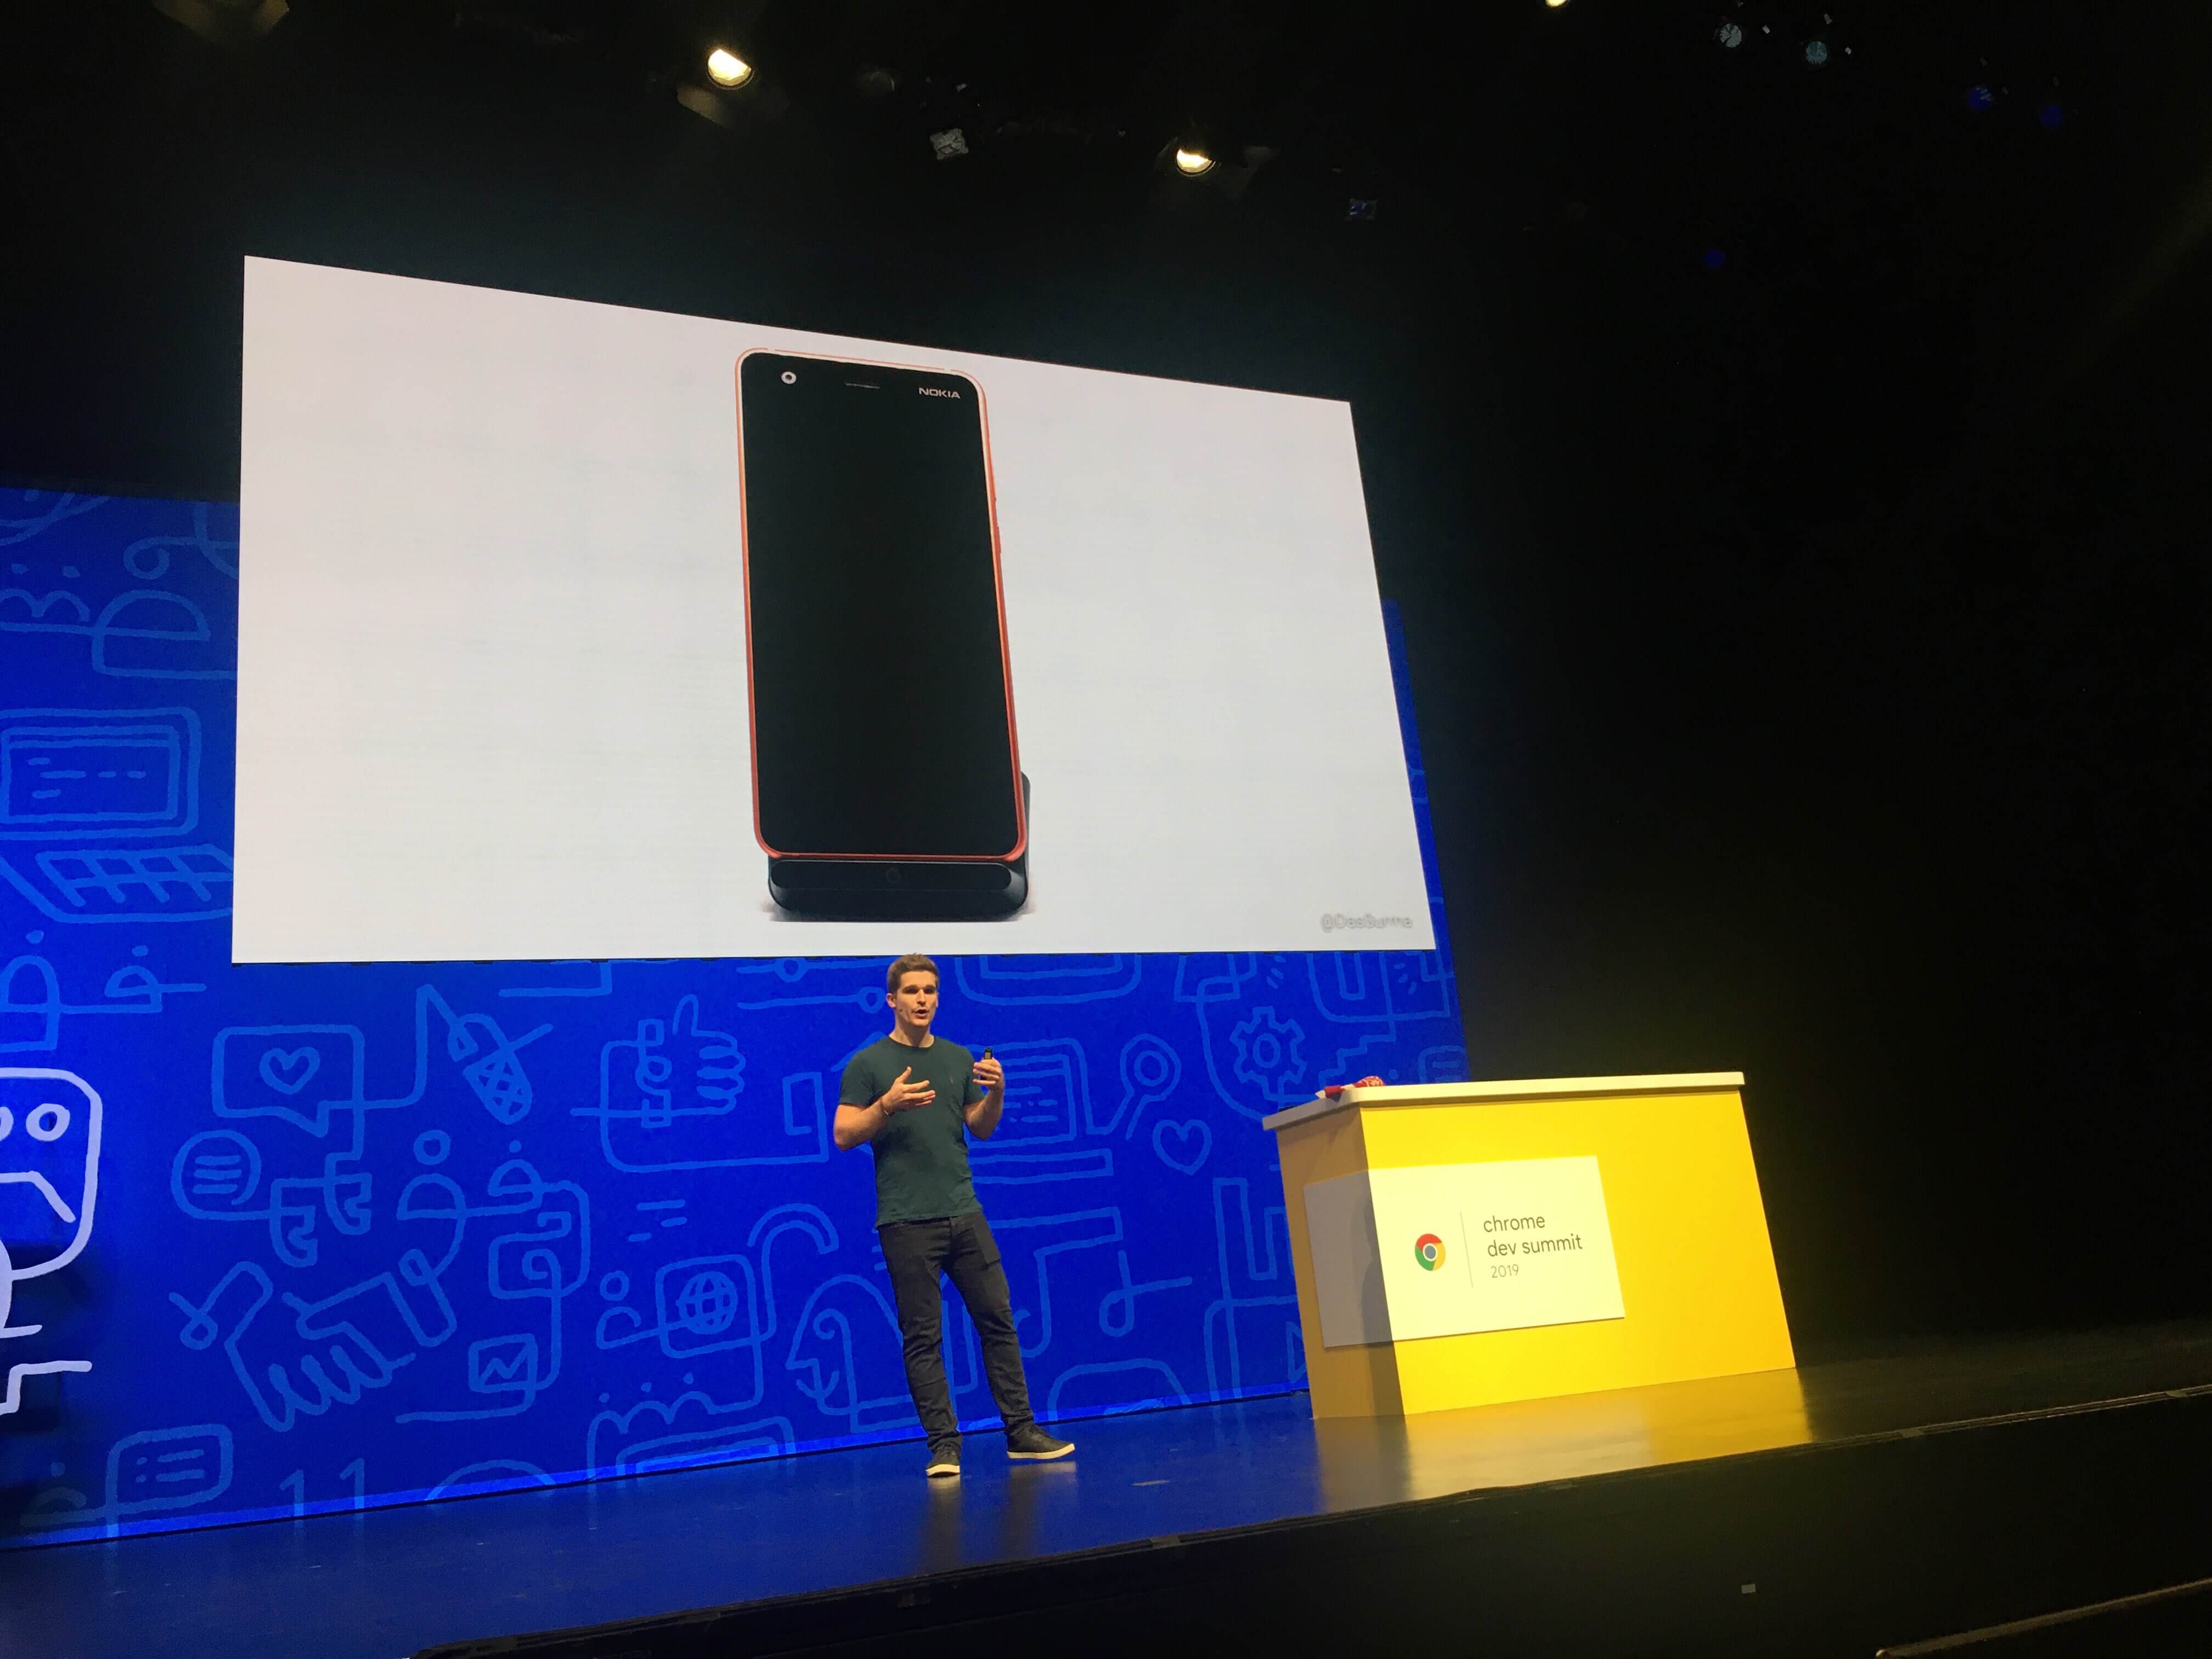 Surma em sua palestra no Chrome Dev Summit 2019 exibindo celulares com menores capacidades